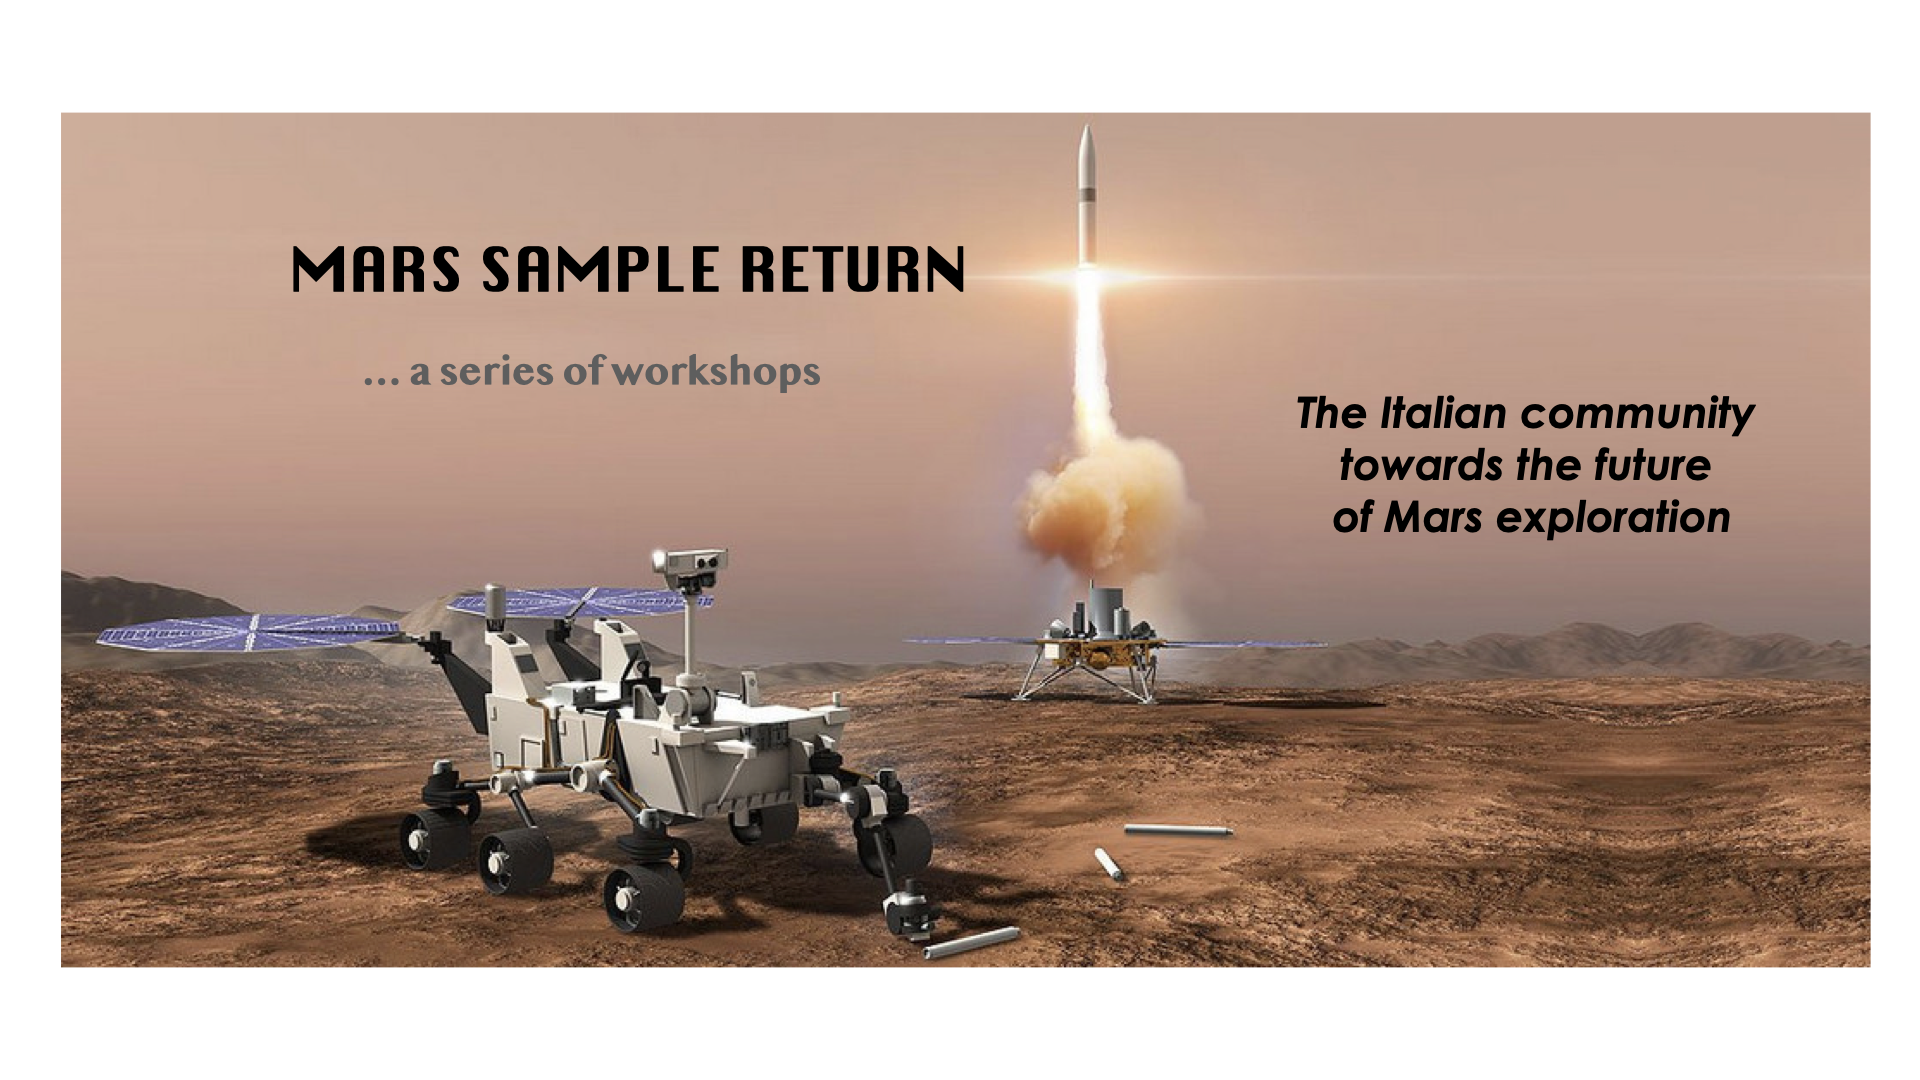 Mars Sample Return - a series of workshops